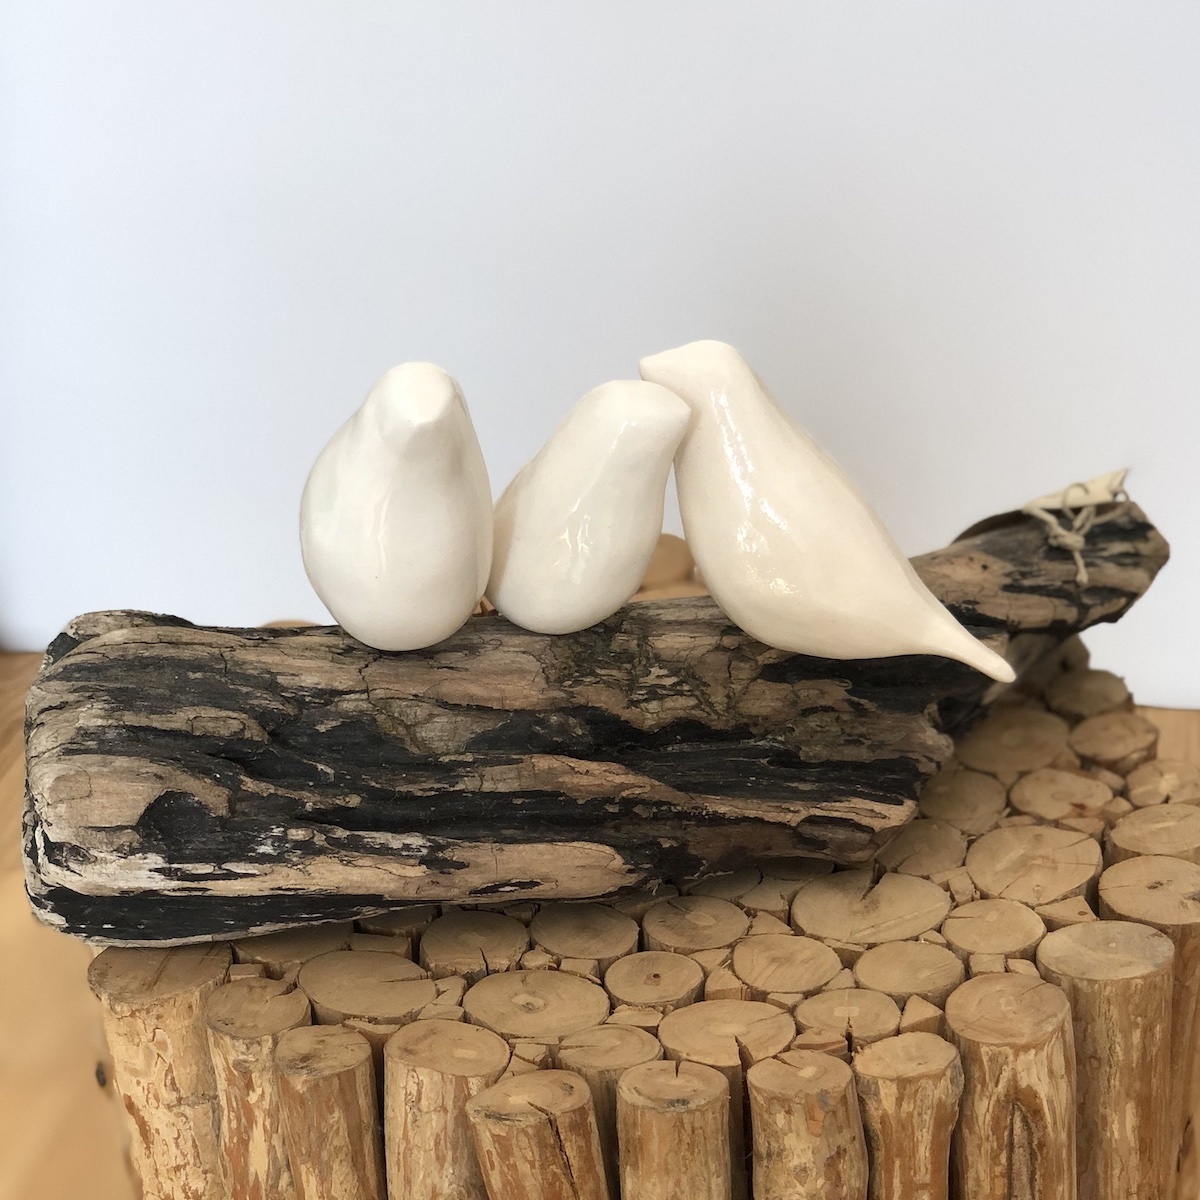 3 oiseaux en cramique sur bois flott